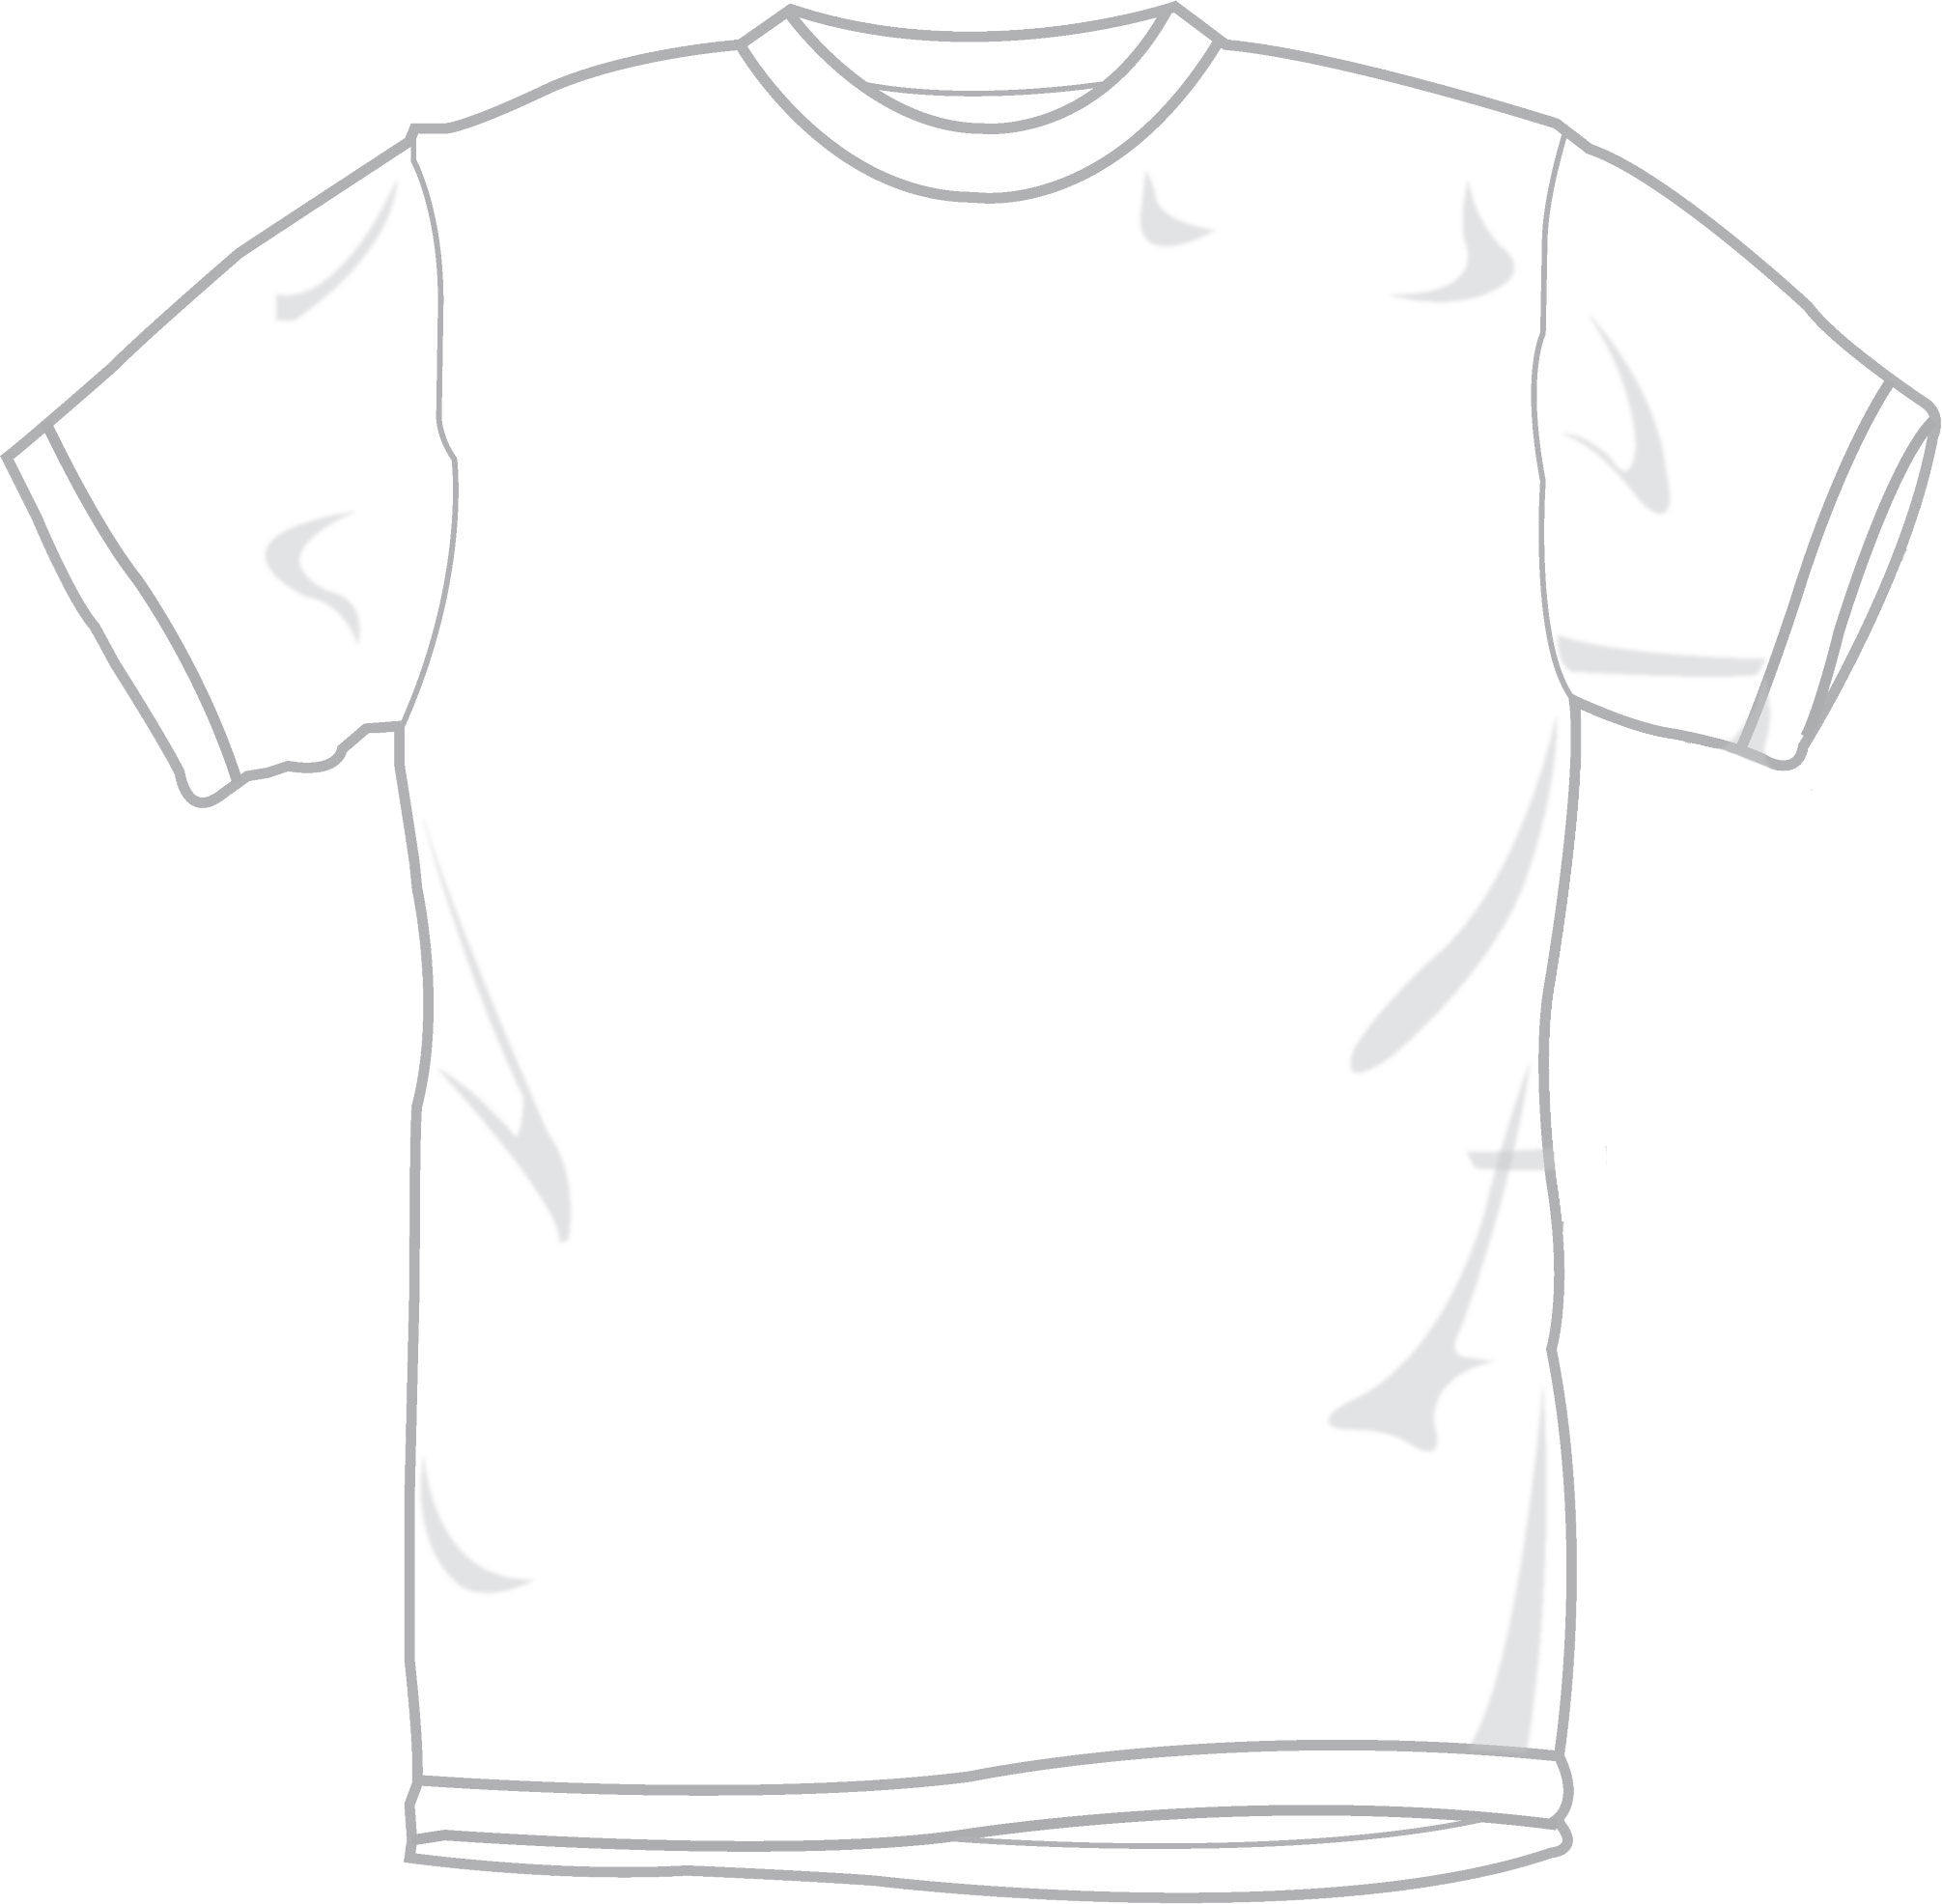 clipart white t shirt - photo #48